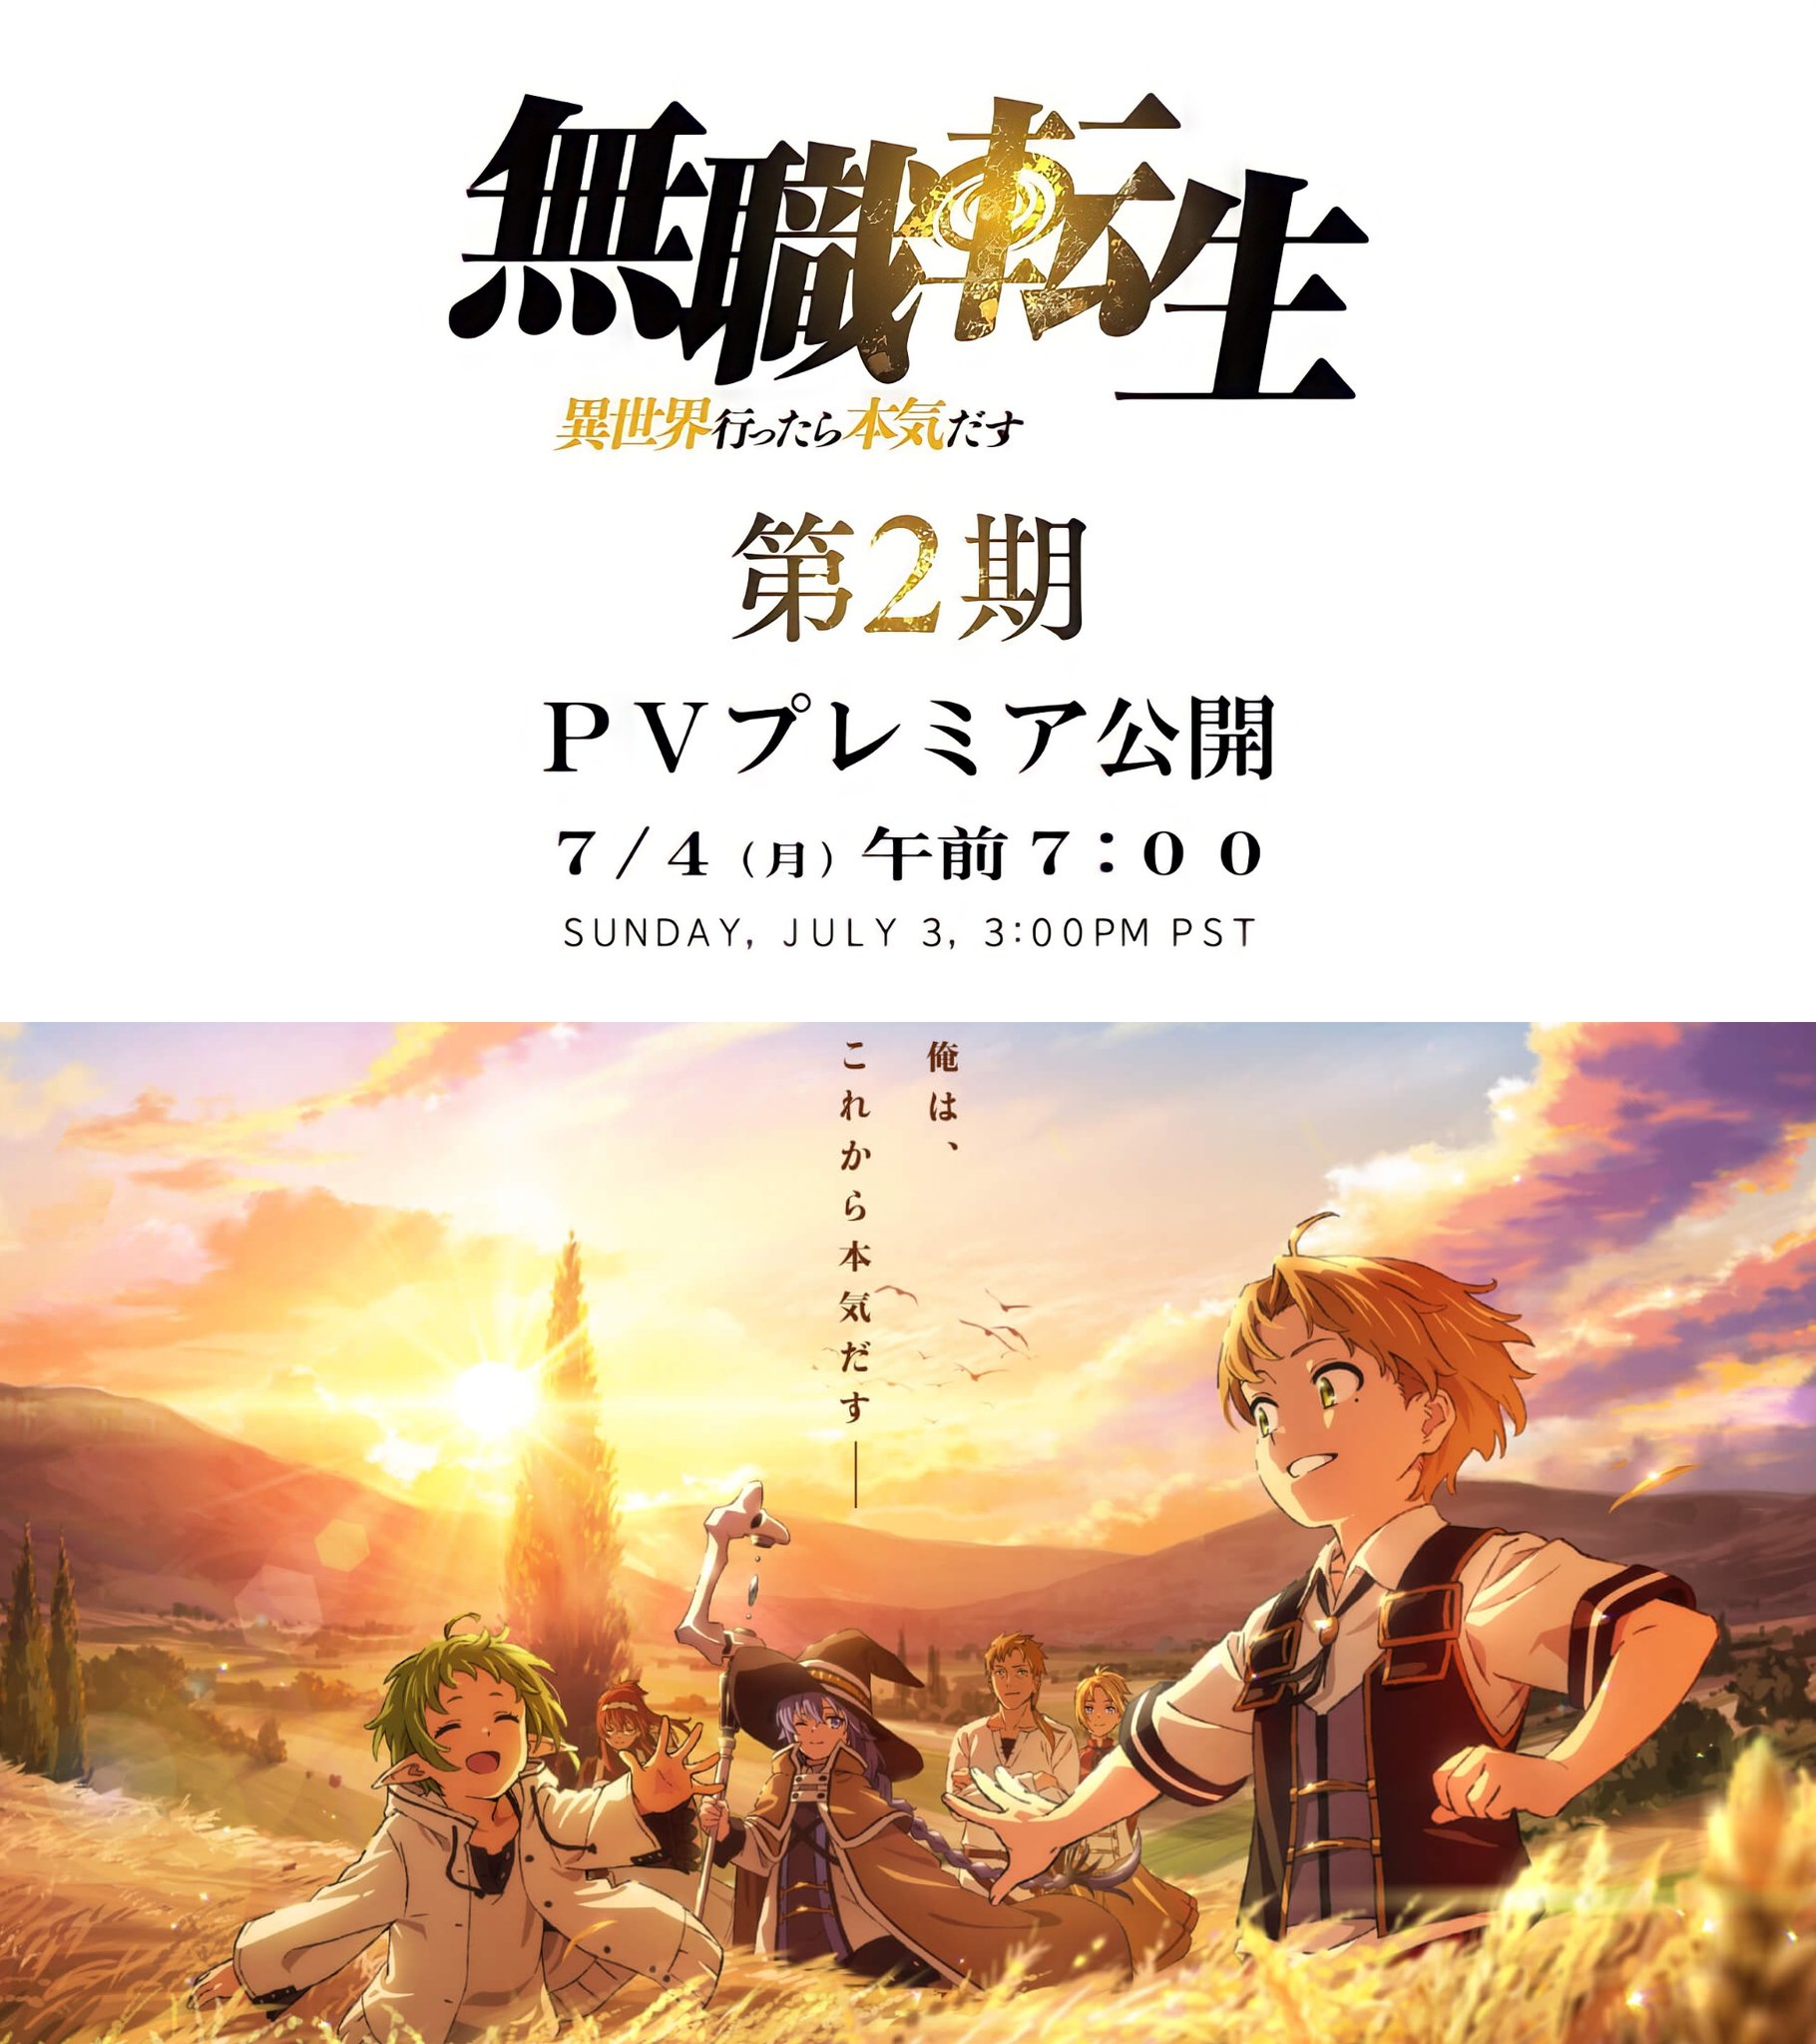 PV do trailer da segunda temporada de Mushoku Tensei Jobless Reincarnation  será lançado em 4 de julho de 2022 - All Things Anime